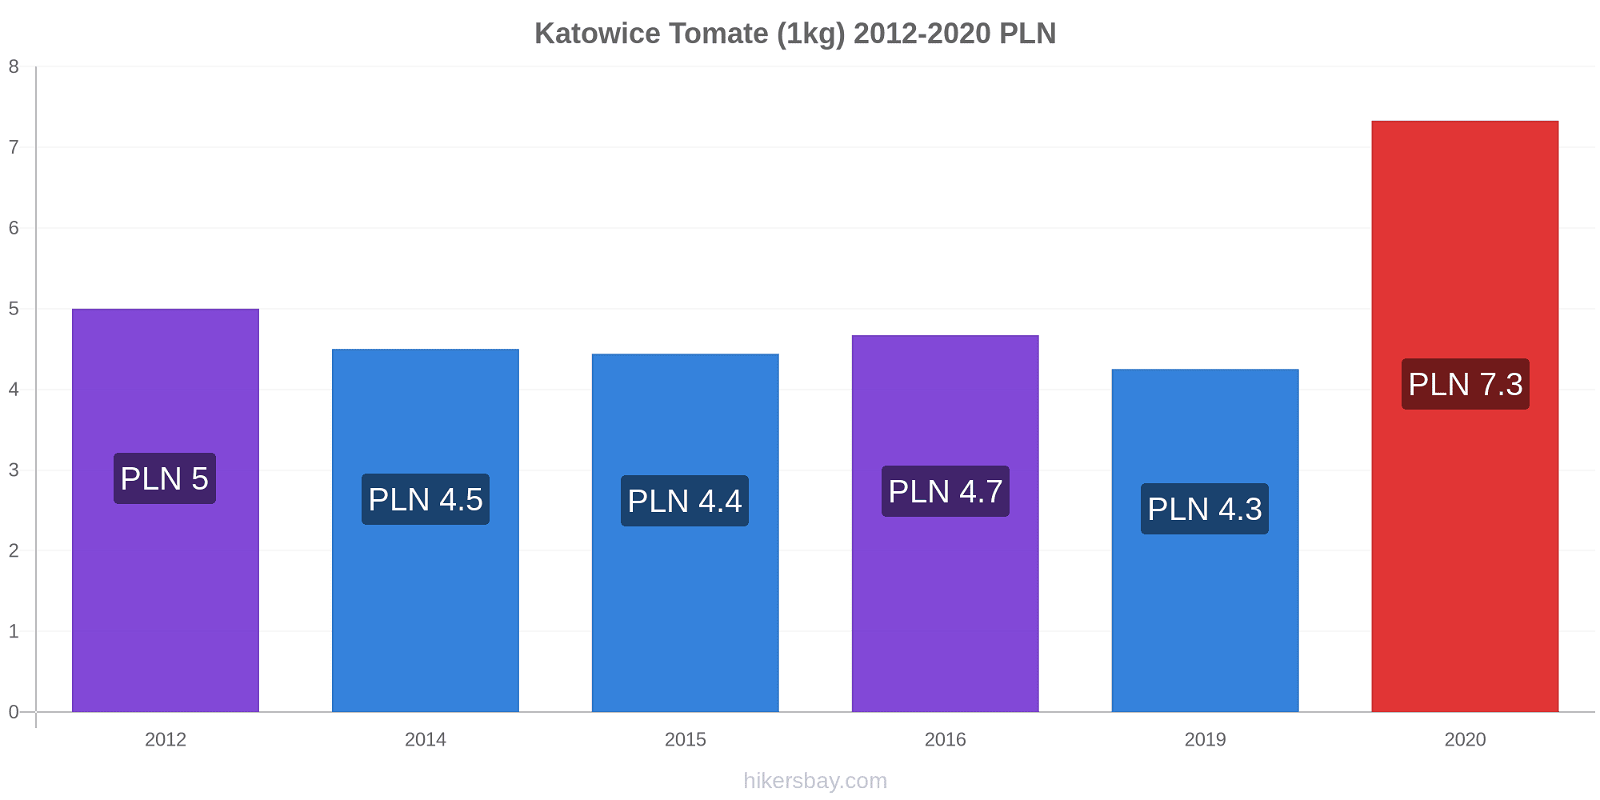 Katowice changements de prix Tomate (1kg) hikersbay.com